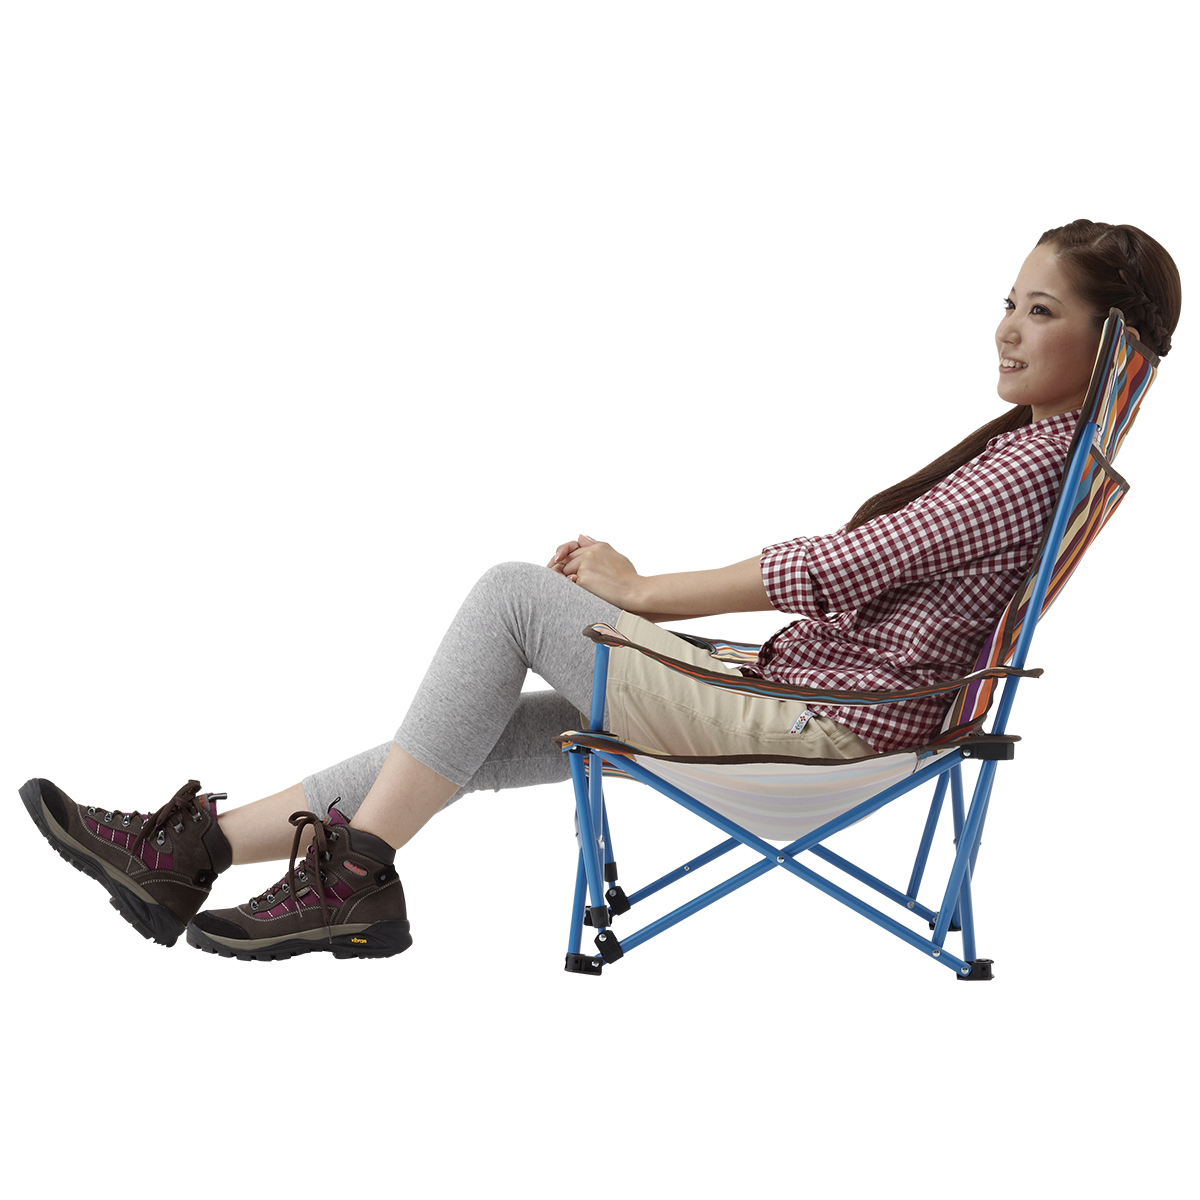 ヒーリングチェア プラス オレンジストライプ ギア 家具 椅子 ベンチ 製品情報 ロゴスショップ公式オンライン